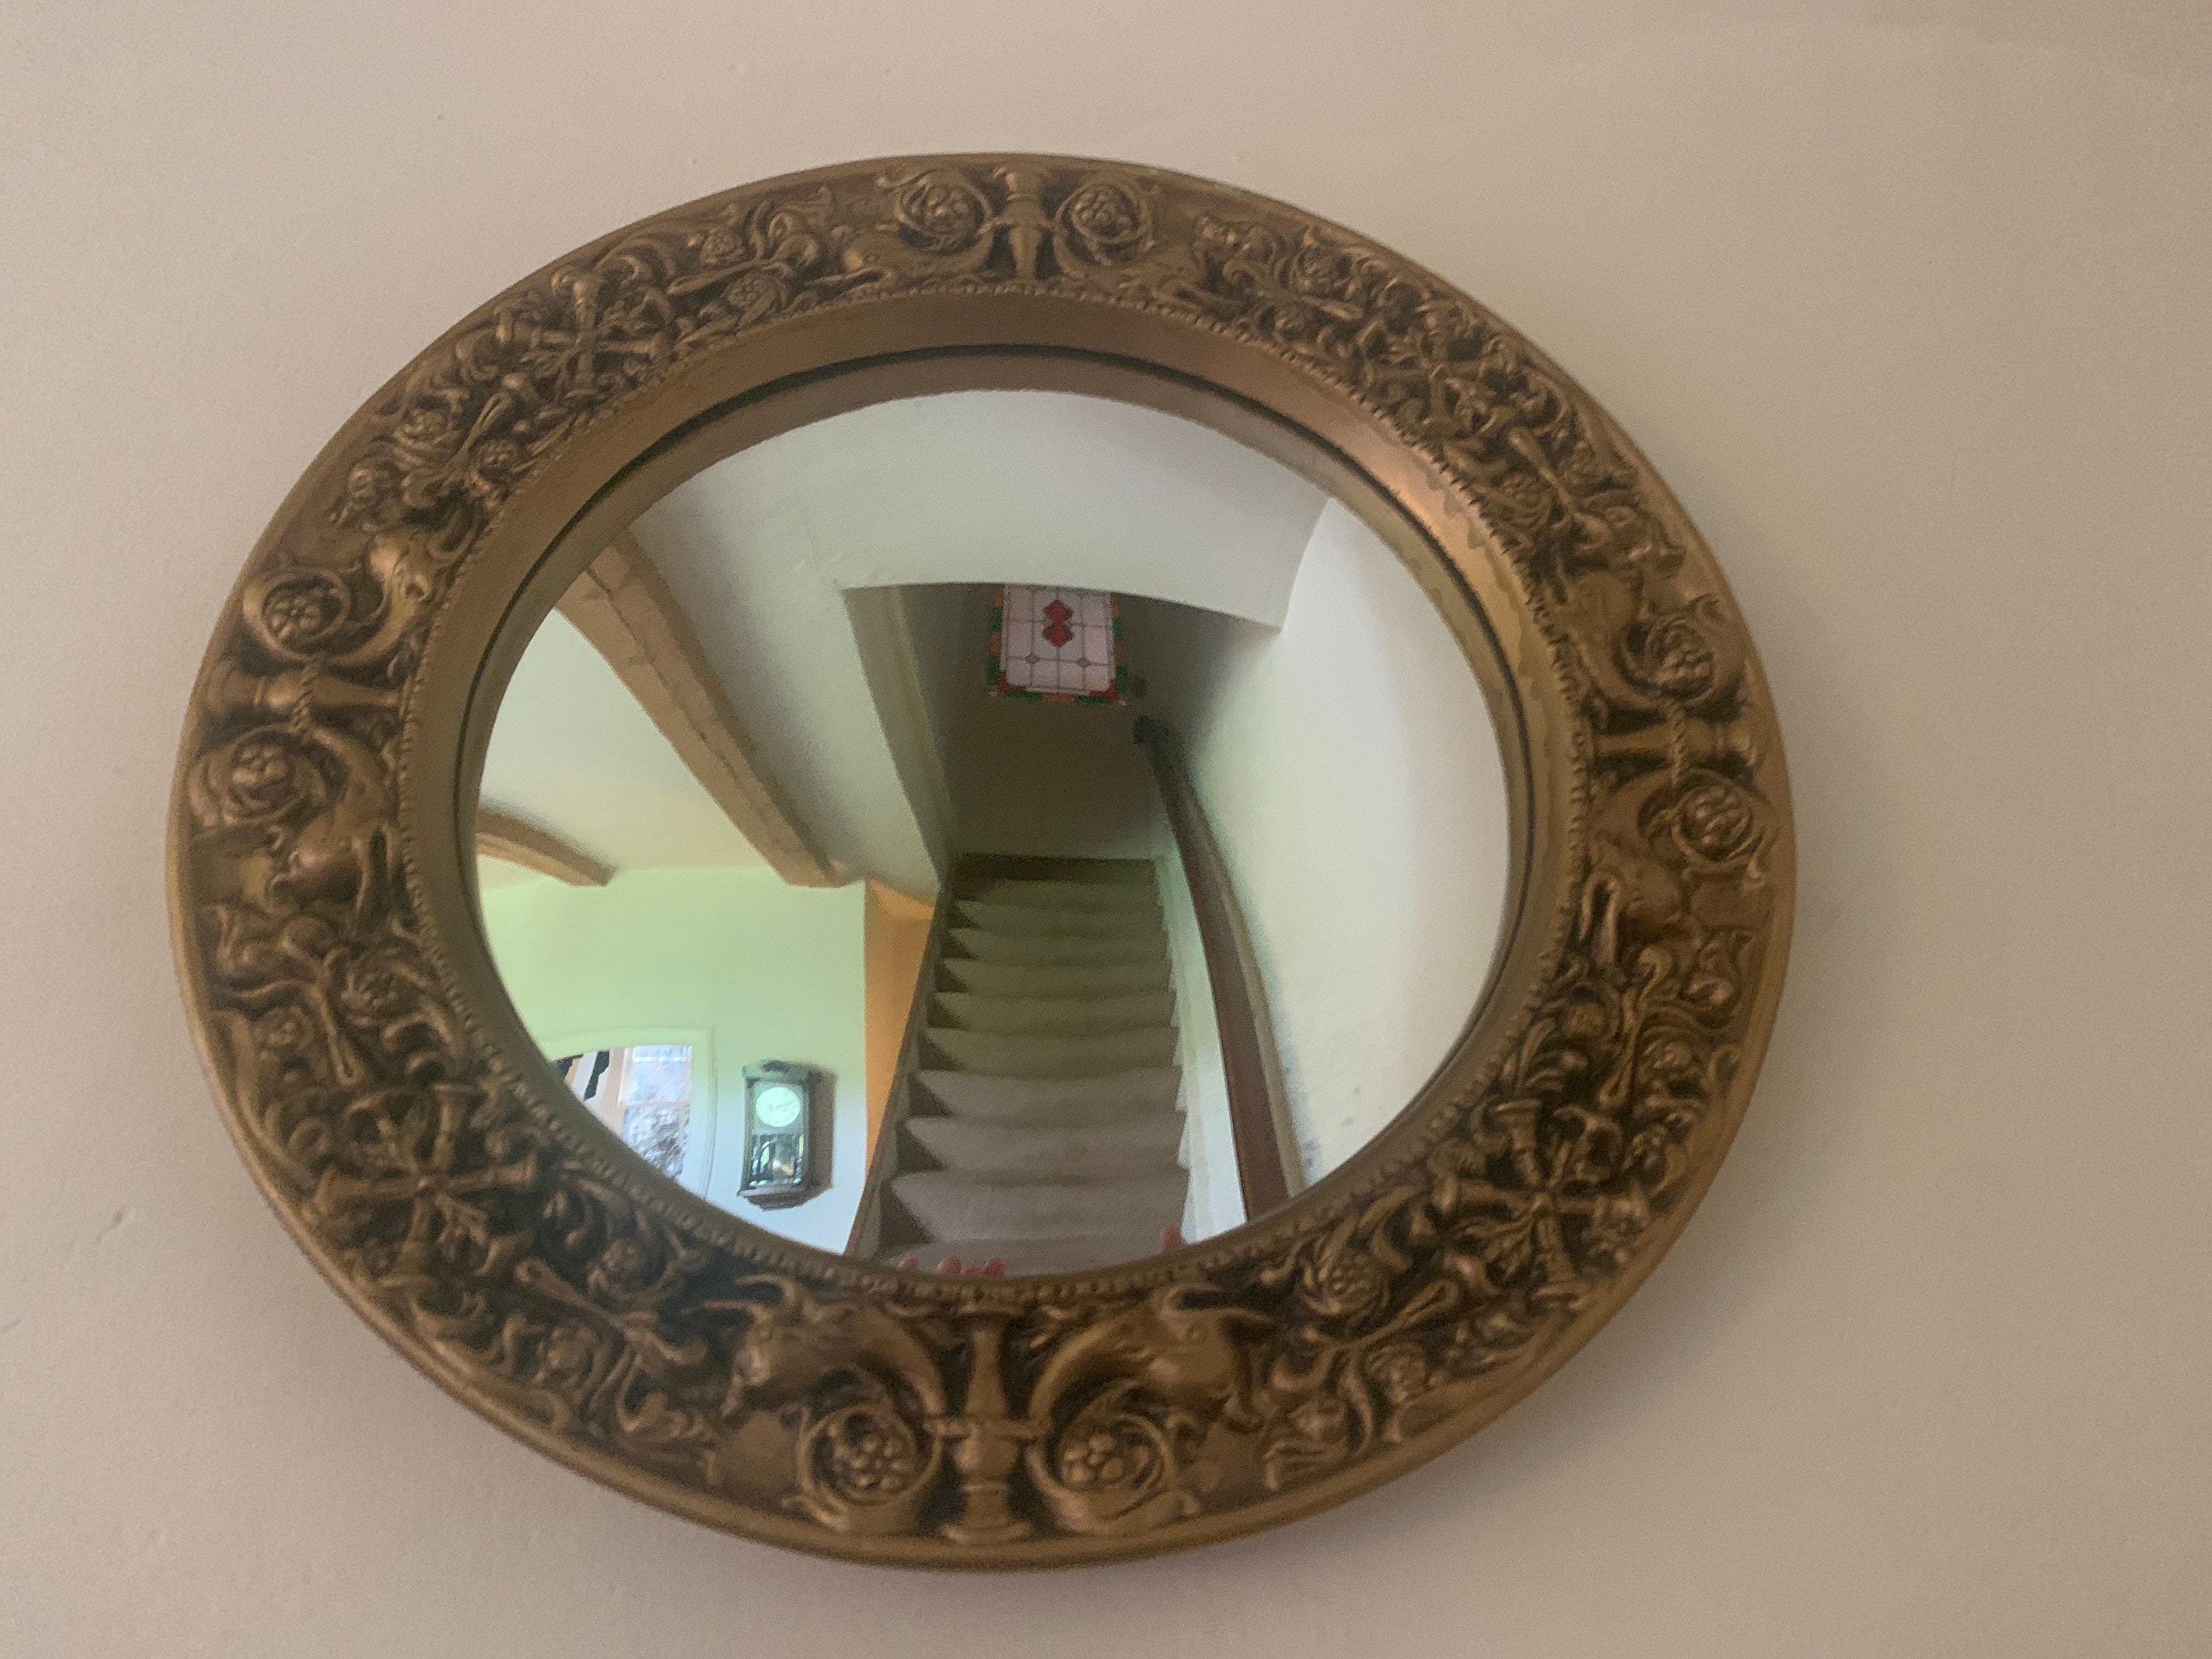 Butler-Spiegel oder sphärischer Spiegel (konvex) mit Adler, großes Modell, 325 €